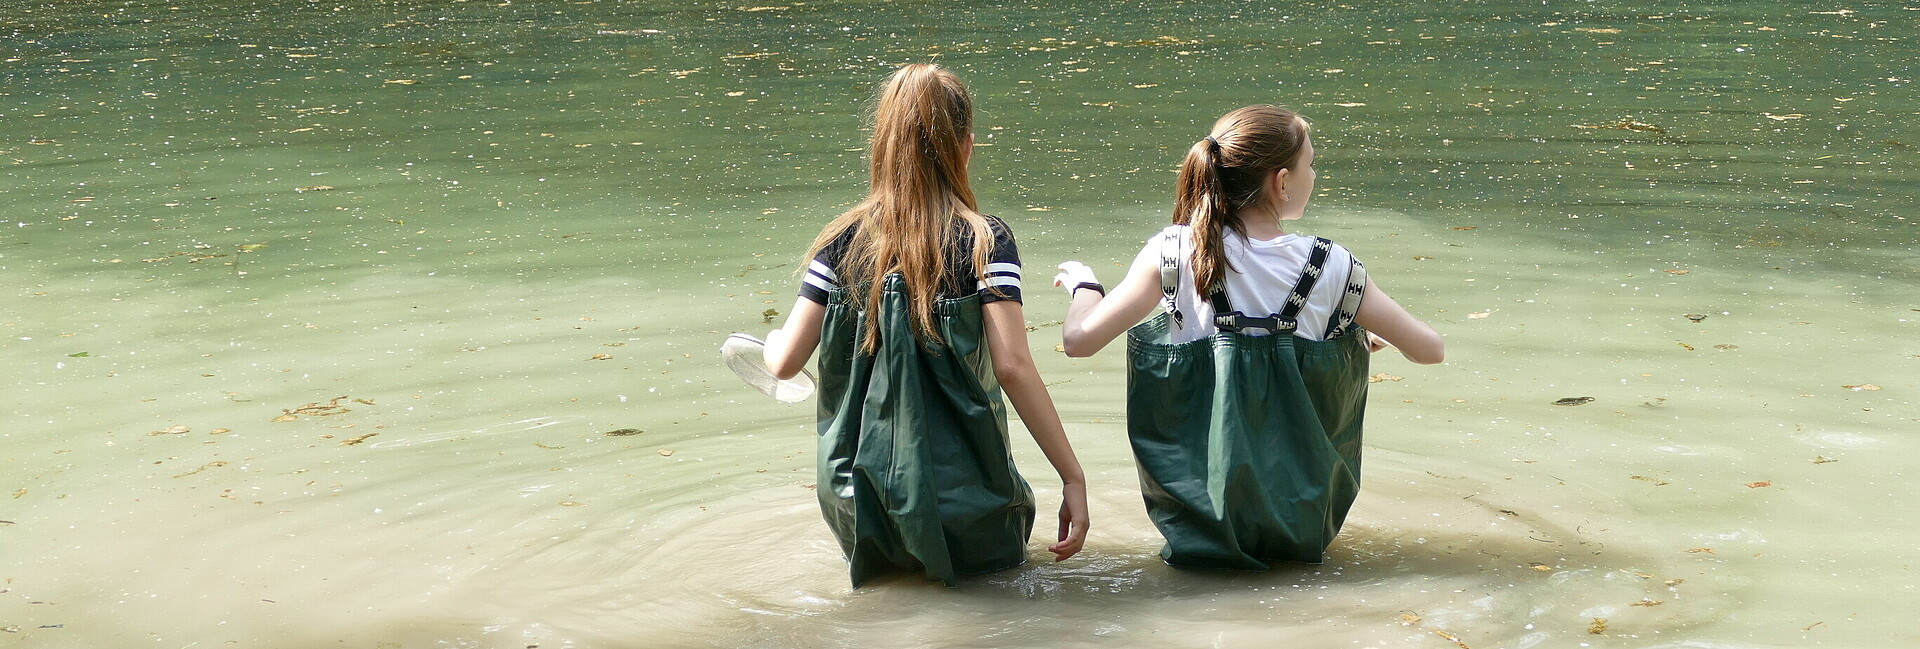 Wathosen-Einsatz zweier Schülerinnen im See